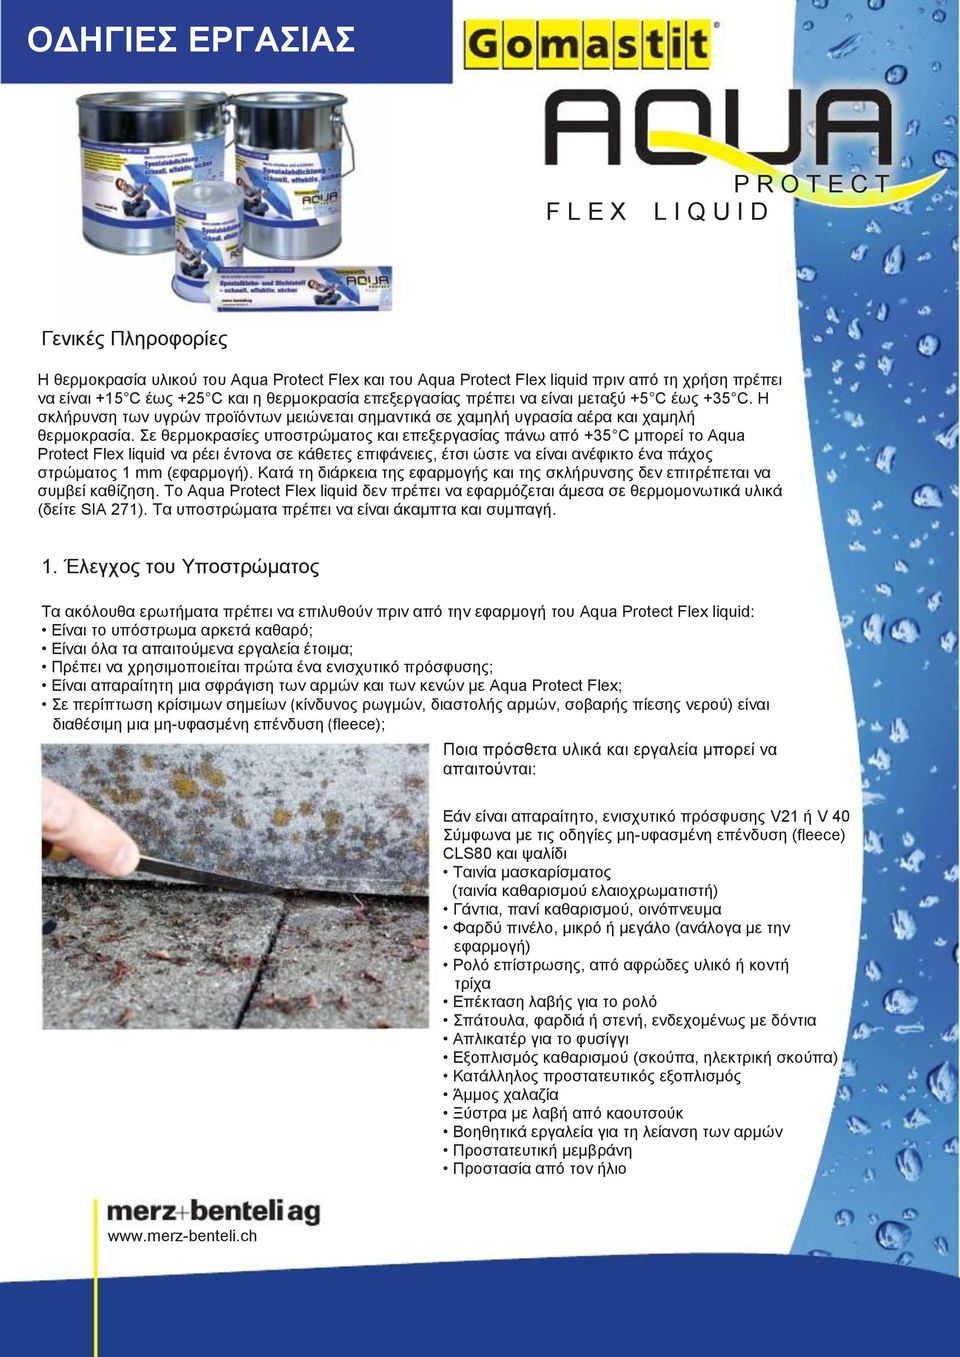 Σε θερμοκρασίες υποστρώματος και επεξεργασίας πάνω από +35 C μπορεί το Aqua Protect Flex liquid να ρέει έντονα σε κάθετες επιφάνειες, έτσι ώστε να είναι ανέφικτο ένα πάχος στρώματος 1 mm (εφαρμογή).